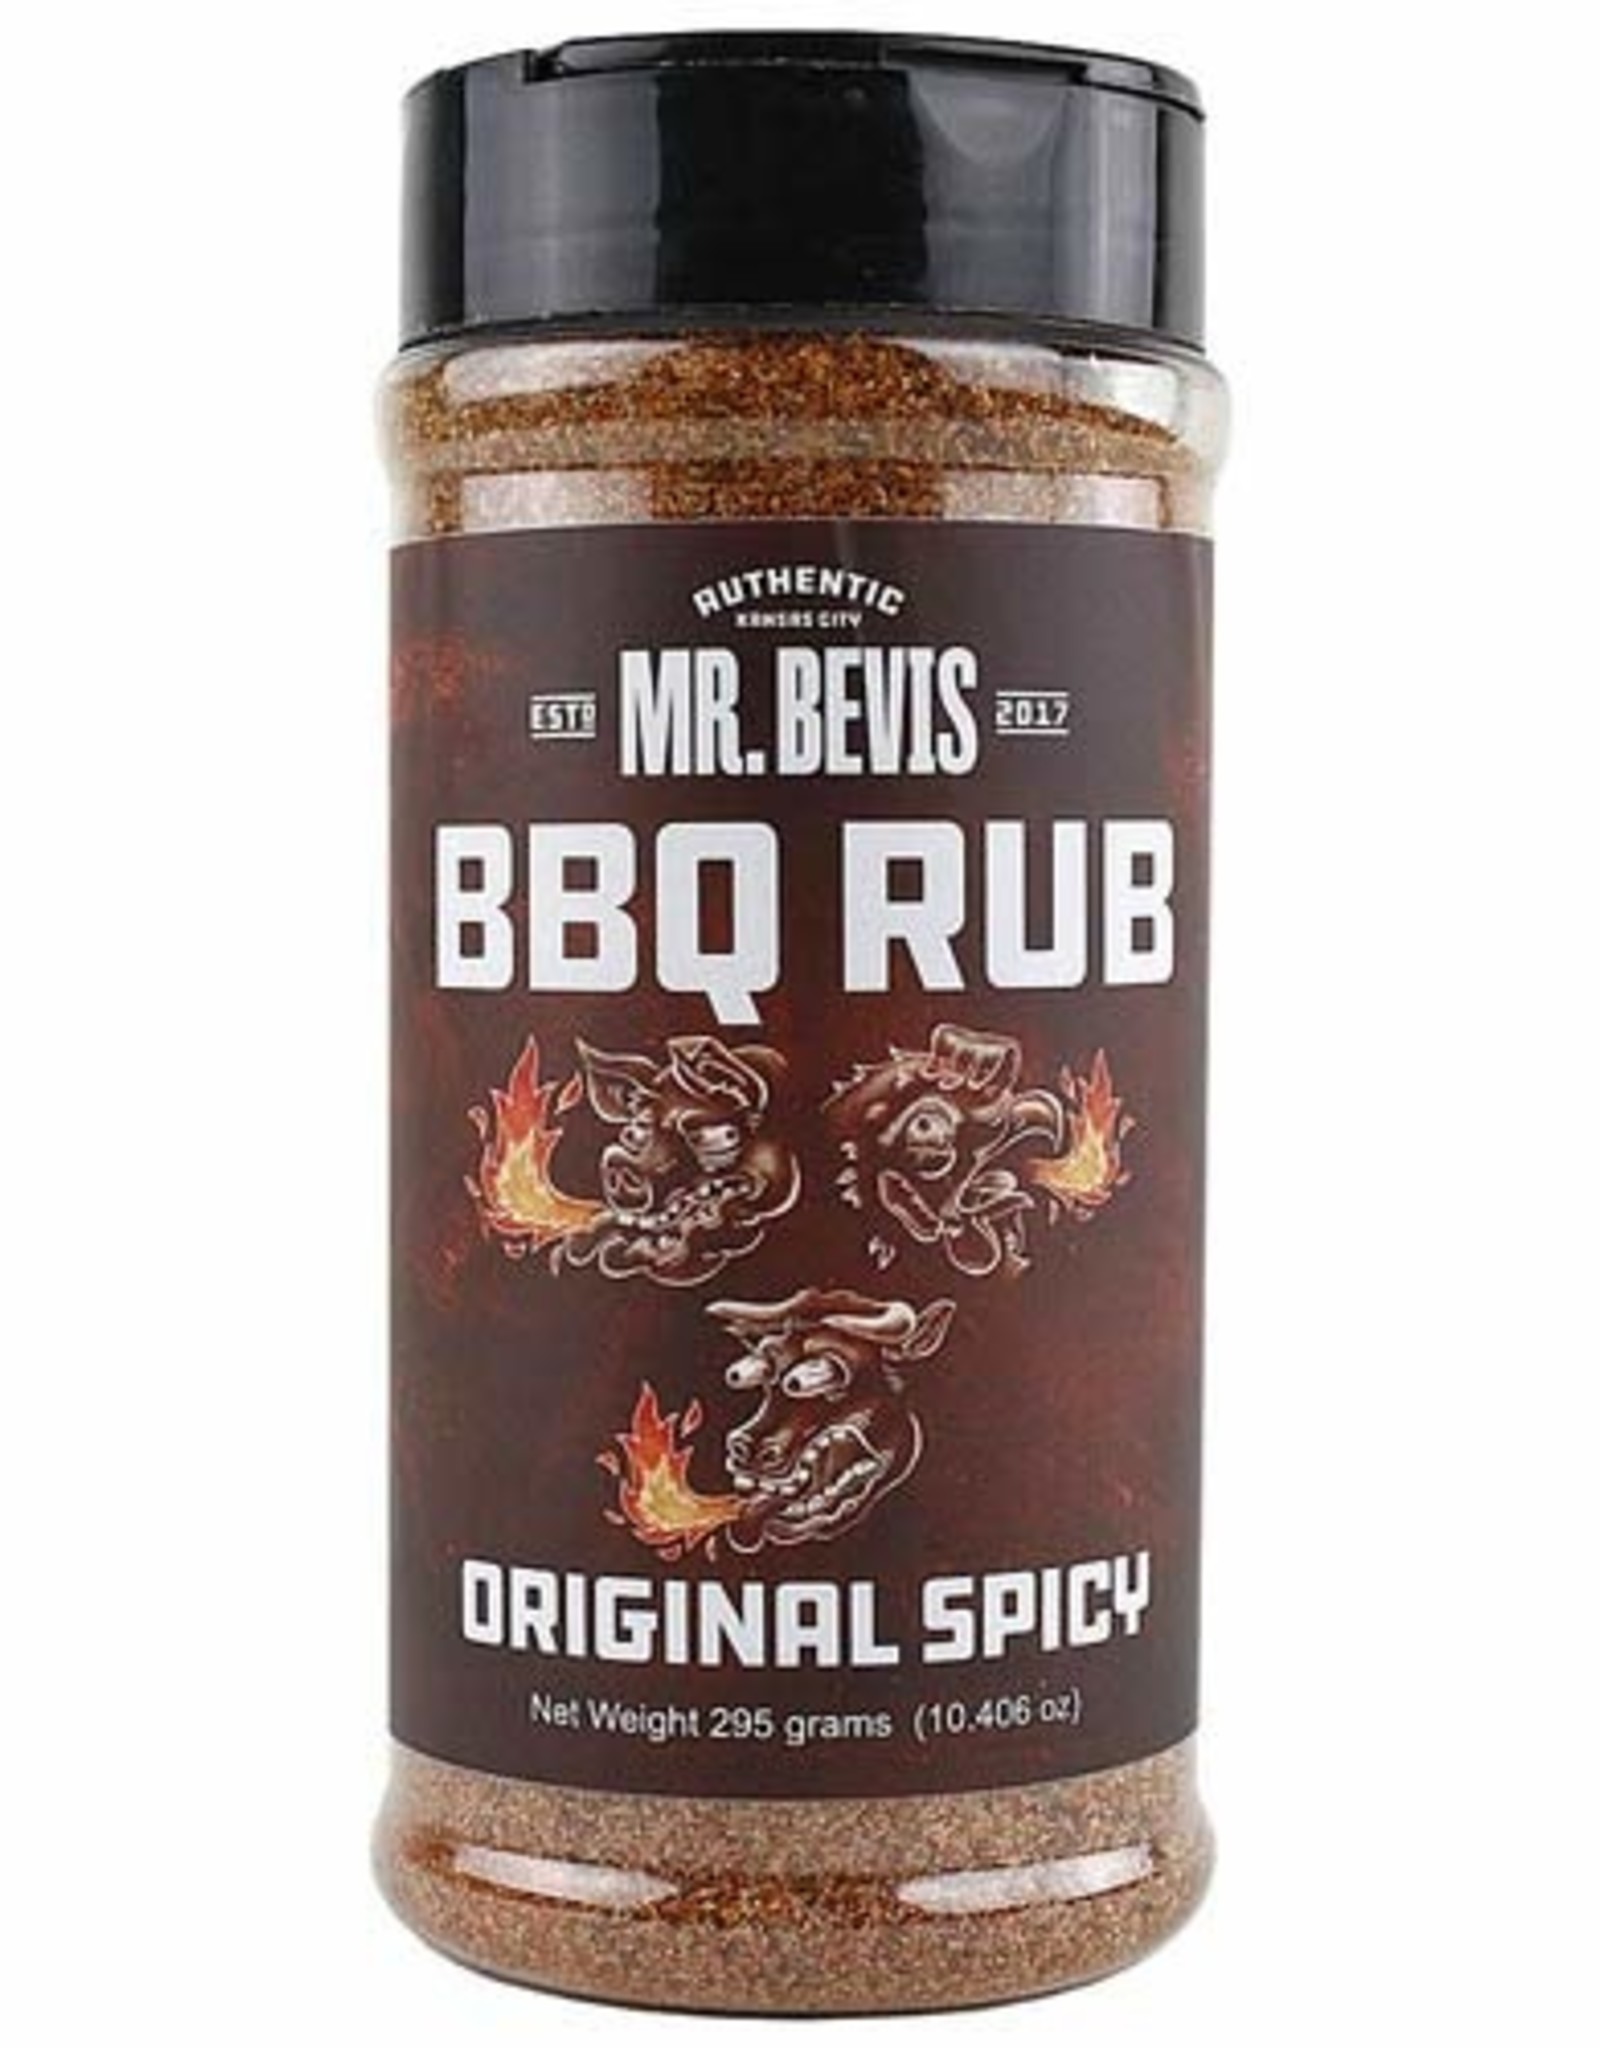 Mr. Bevis Mr. Bevis BBQ RUB Original Spicy 10.406 oz